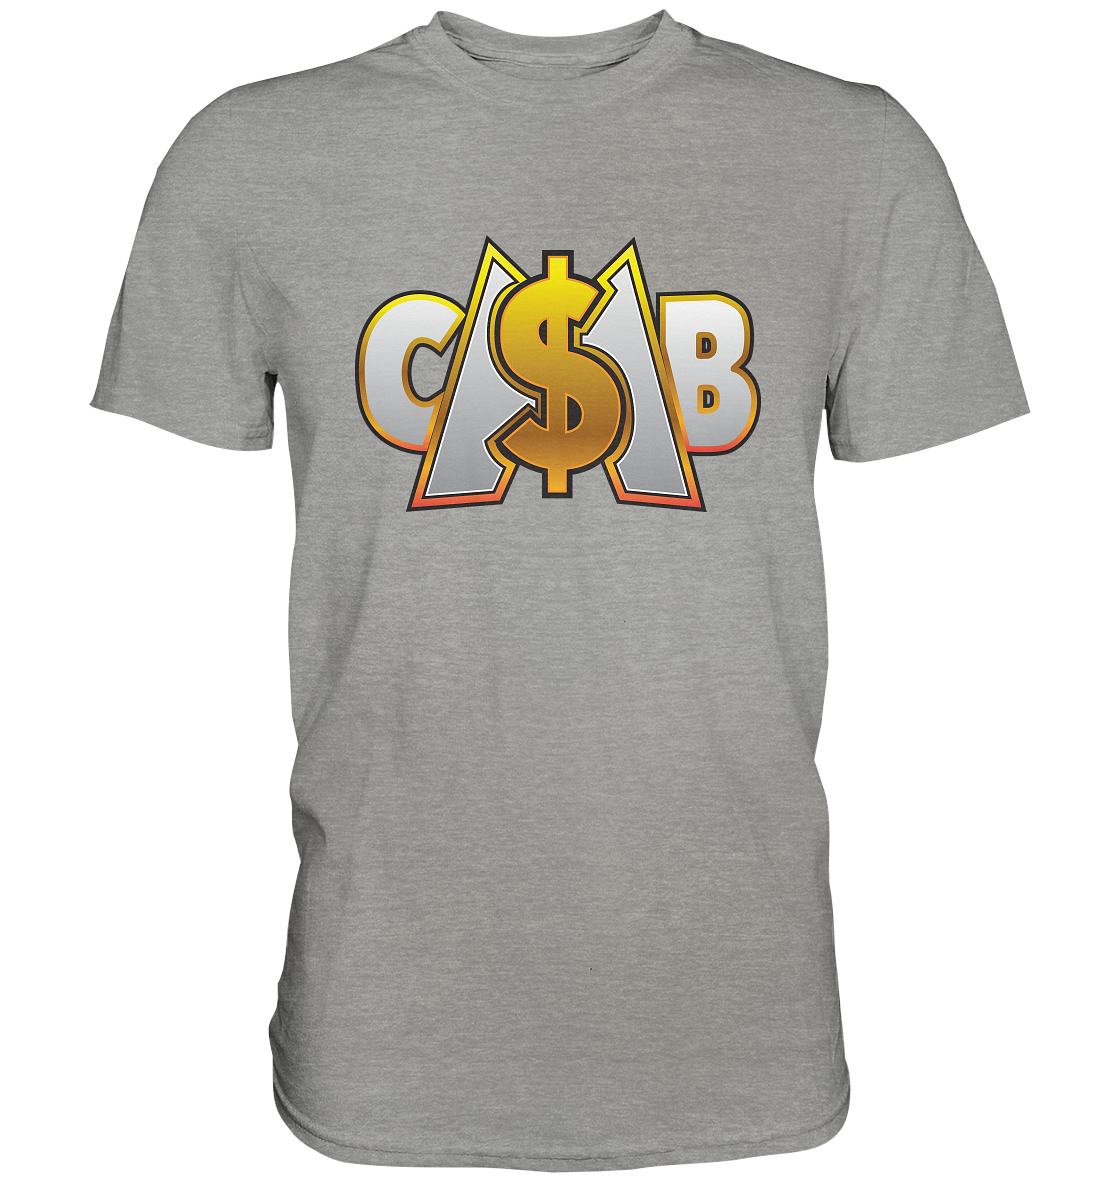 CASH MONEY BROTHERS - Basic Shirt